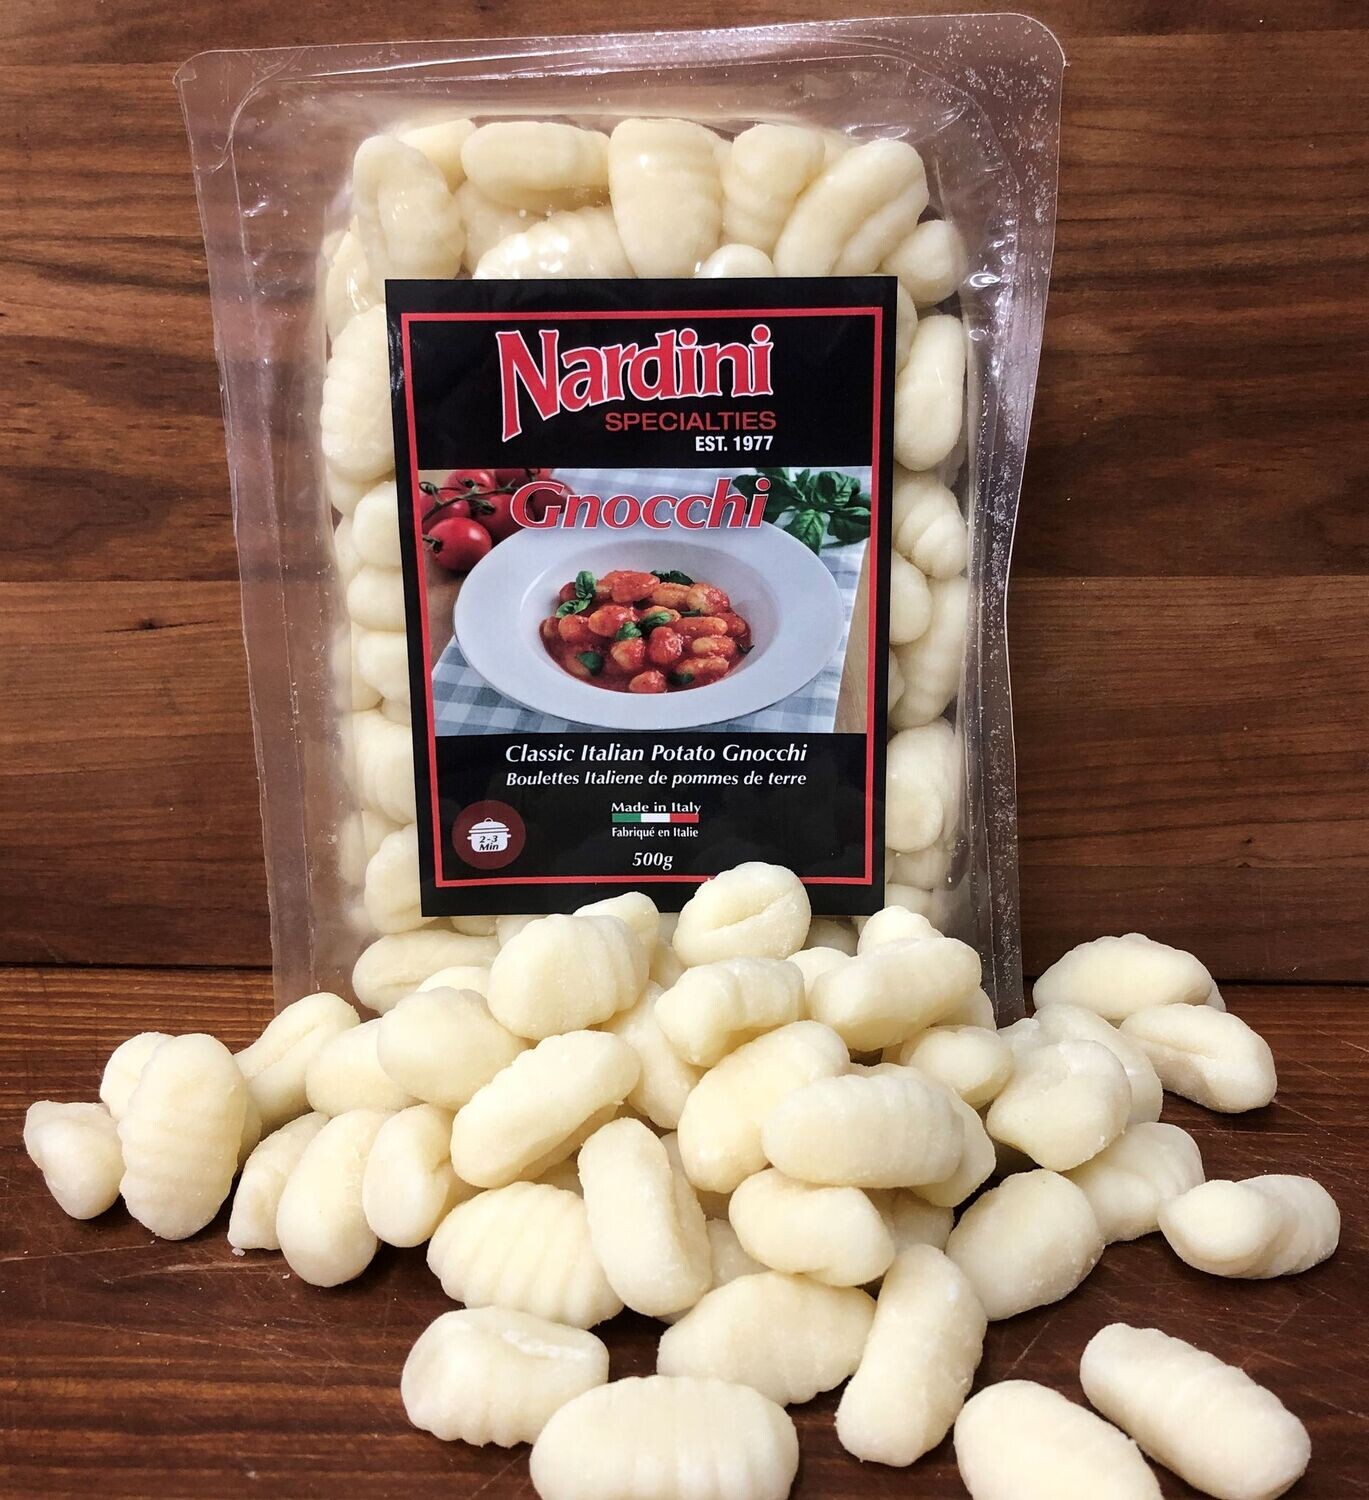 Gnocchi - Nardini Private Label